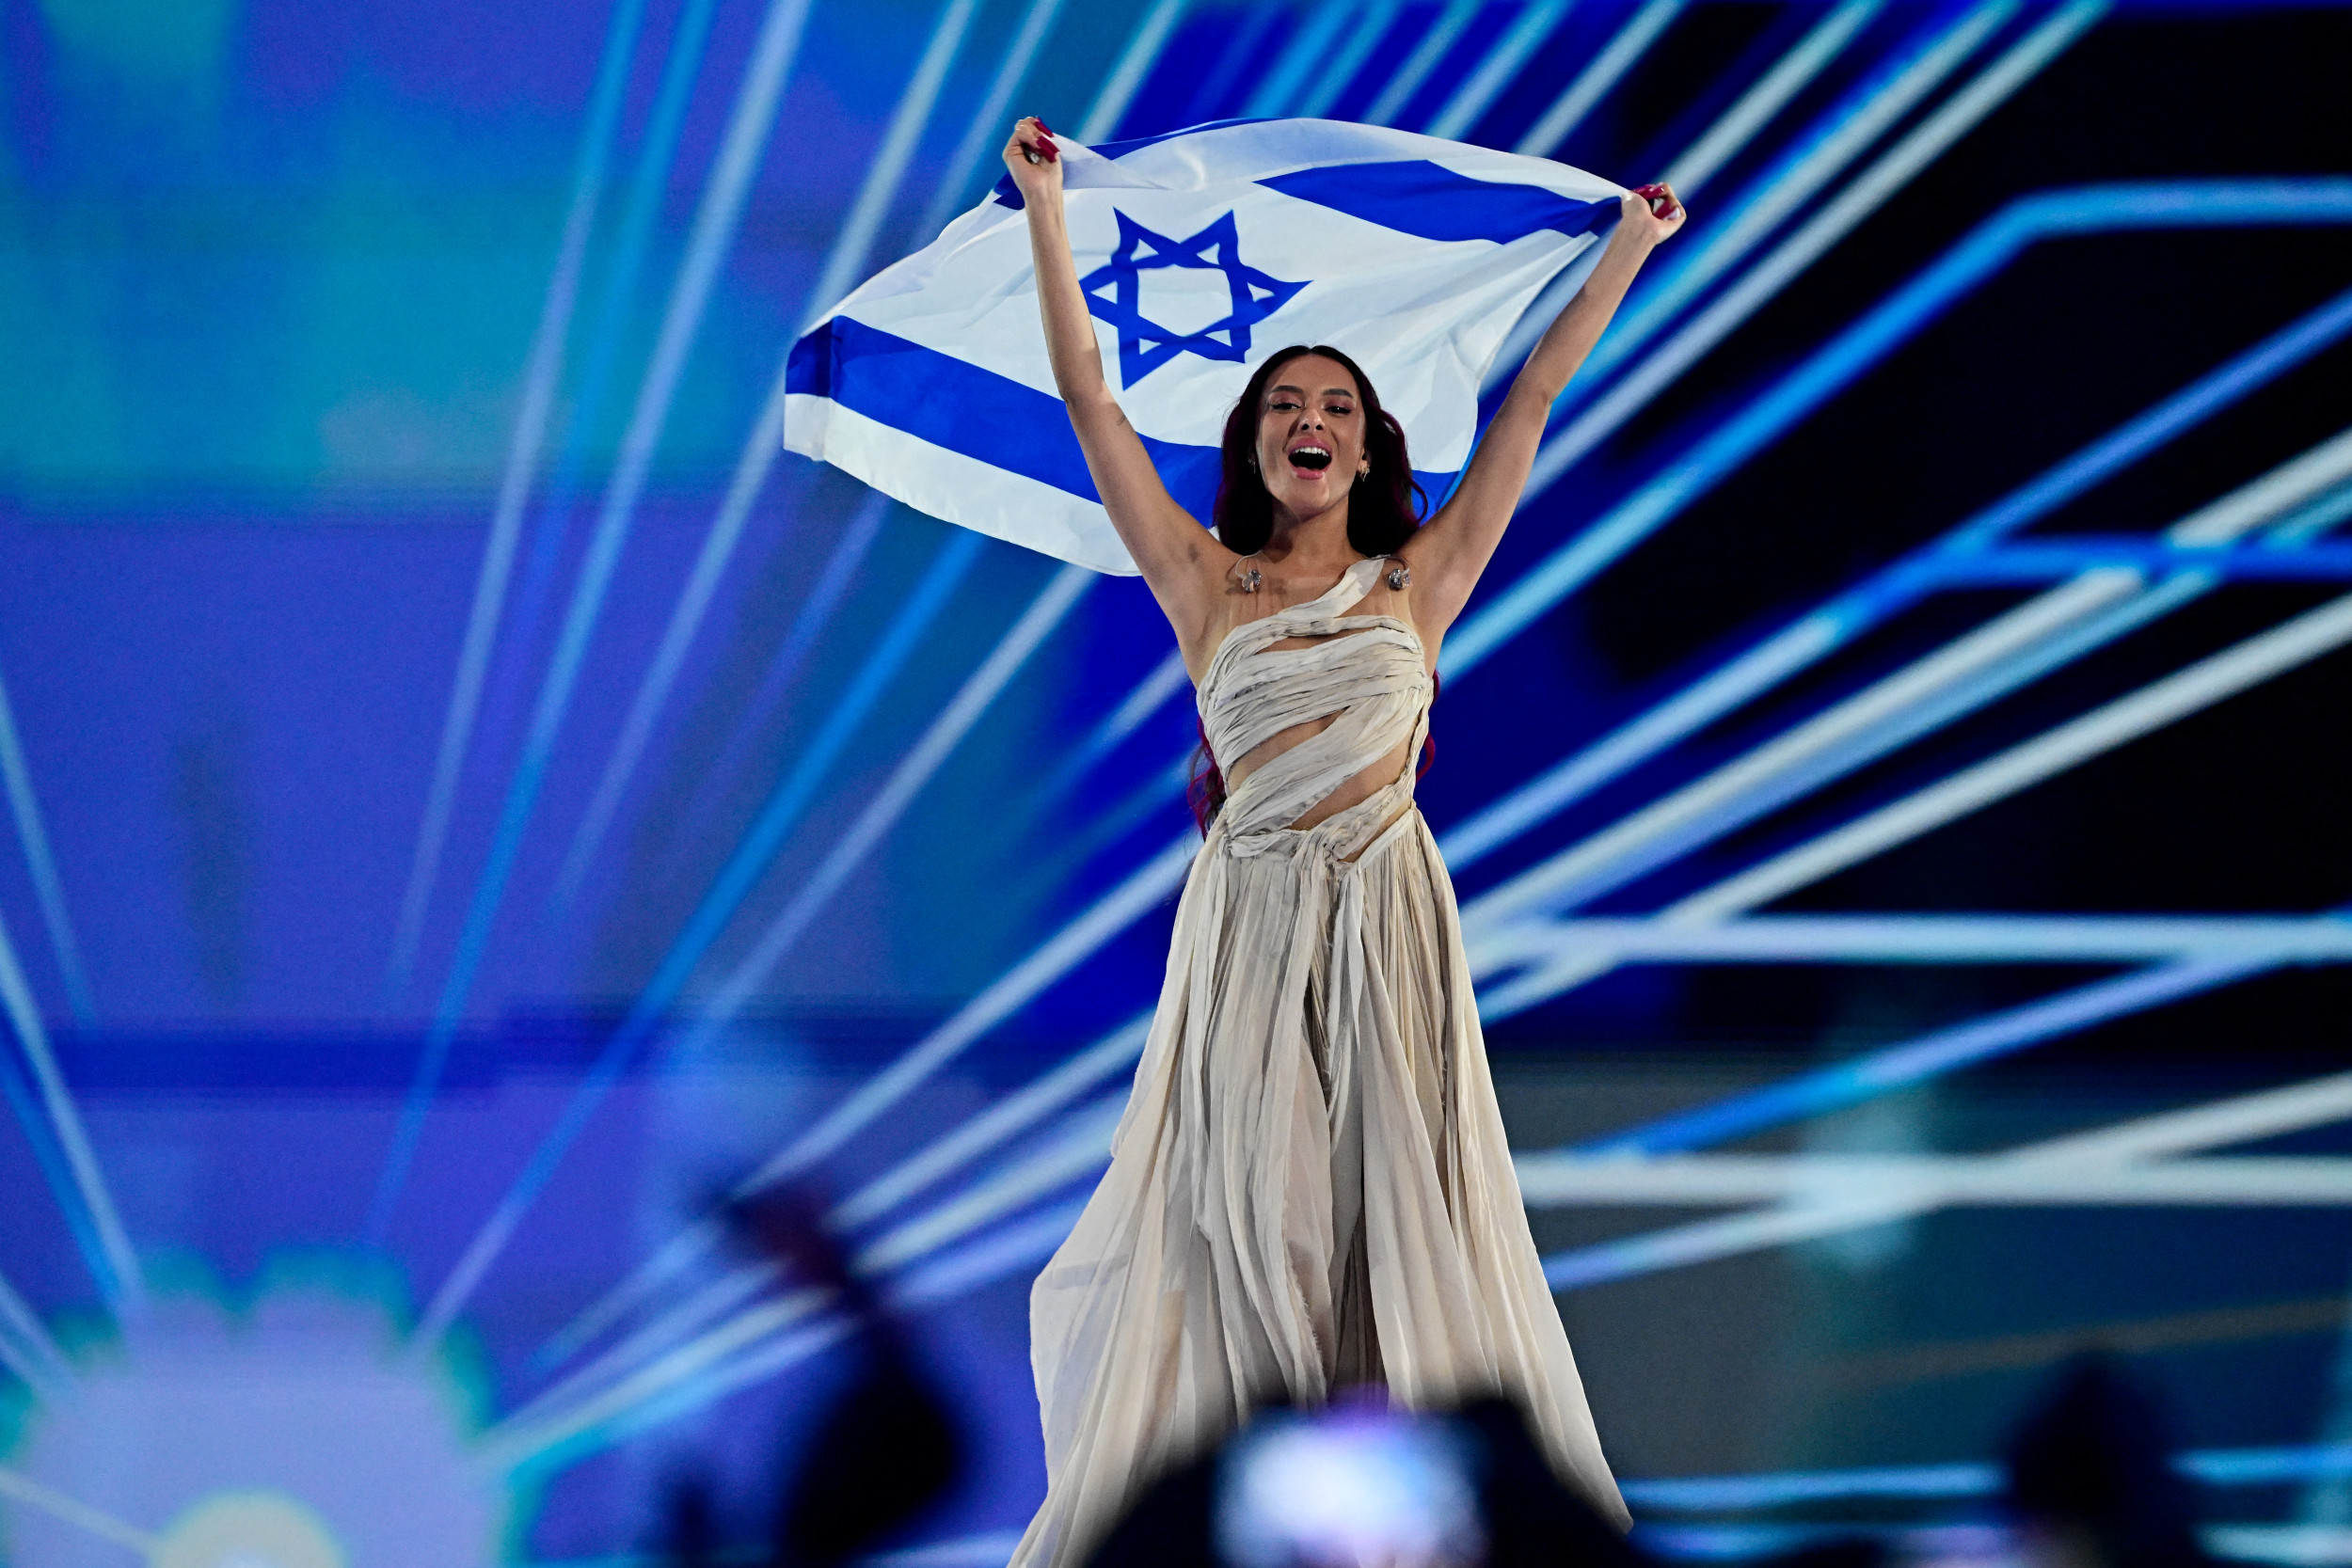 Le candidat israélien à l’Eurovision hué et raillé sous les acclamations, selon des vidéos